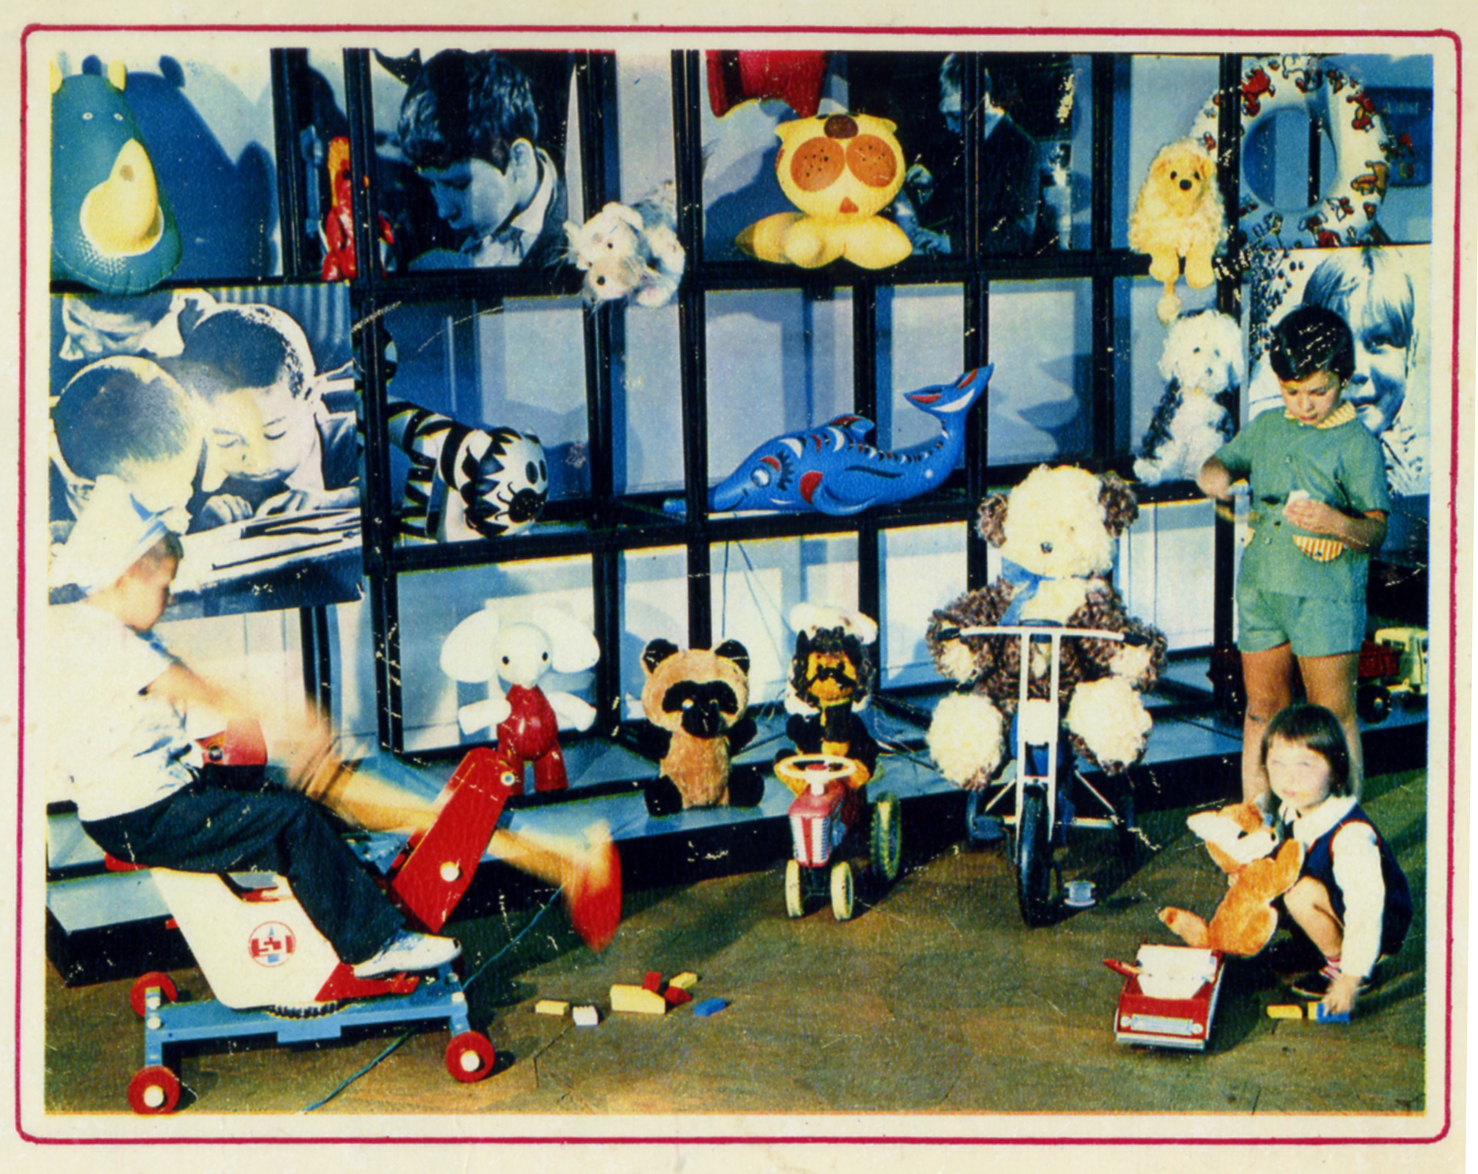 Выставка конами. Открой картинки игрушек 1970 годов в Америке. Cheap made in China Toy 1970s.